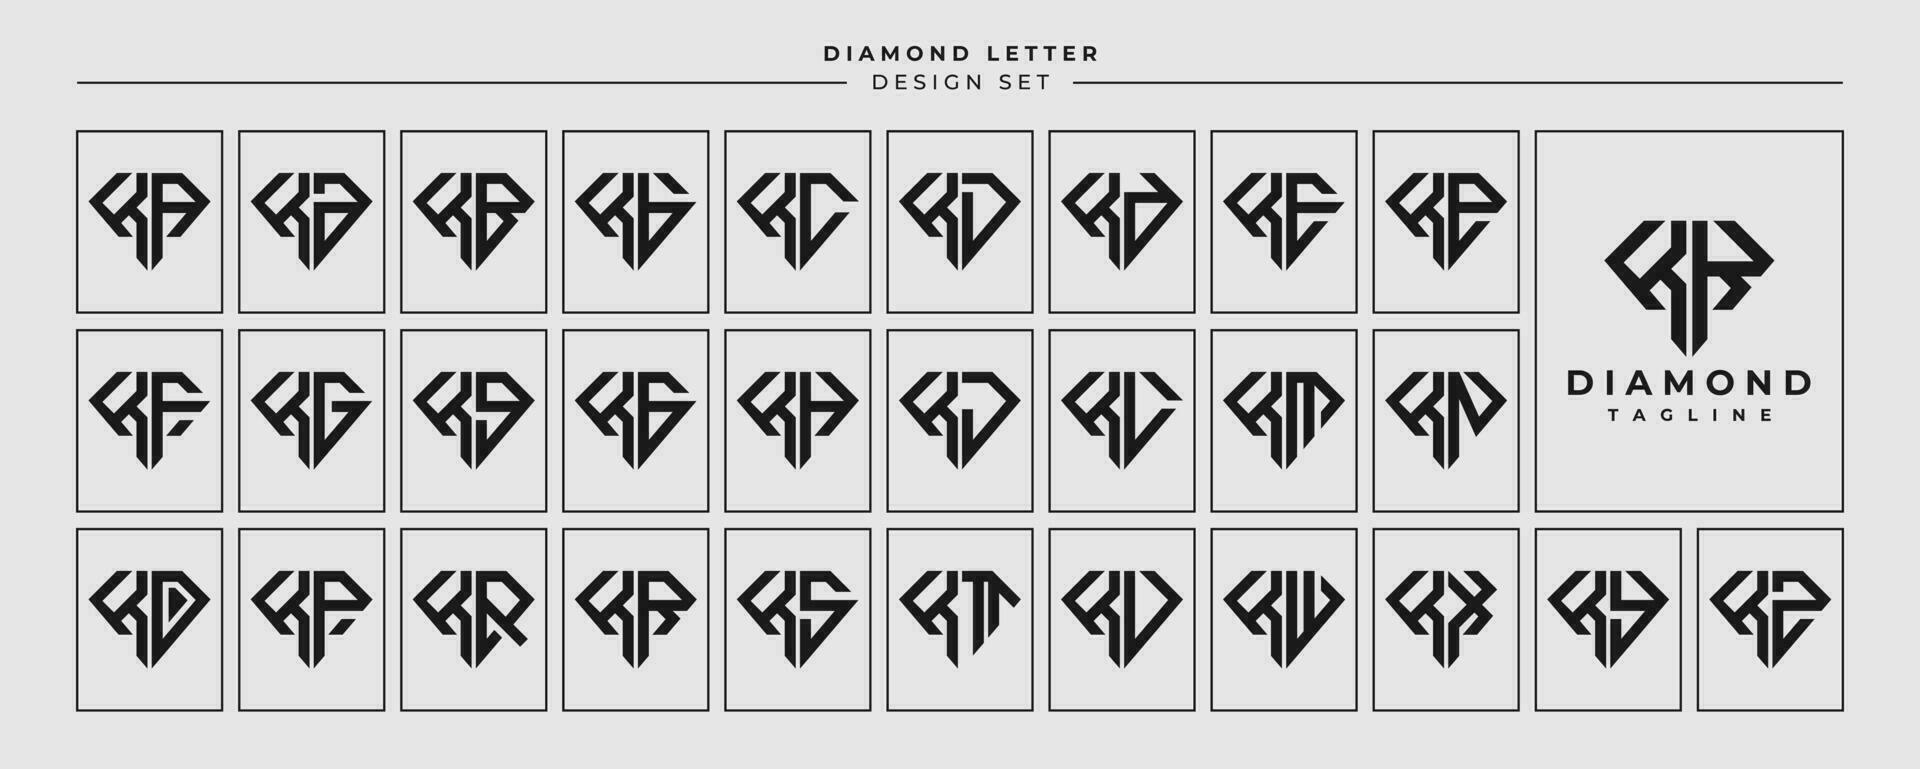 linha joalheria diamante carta k kk logotipo Projeto conjunto vetor